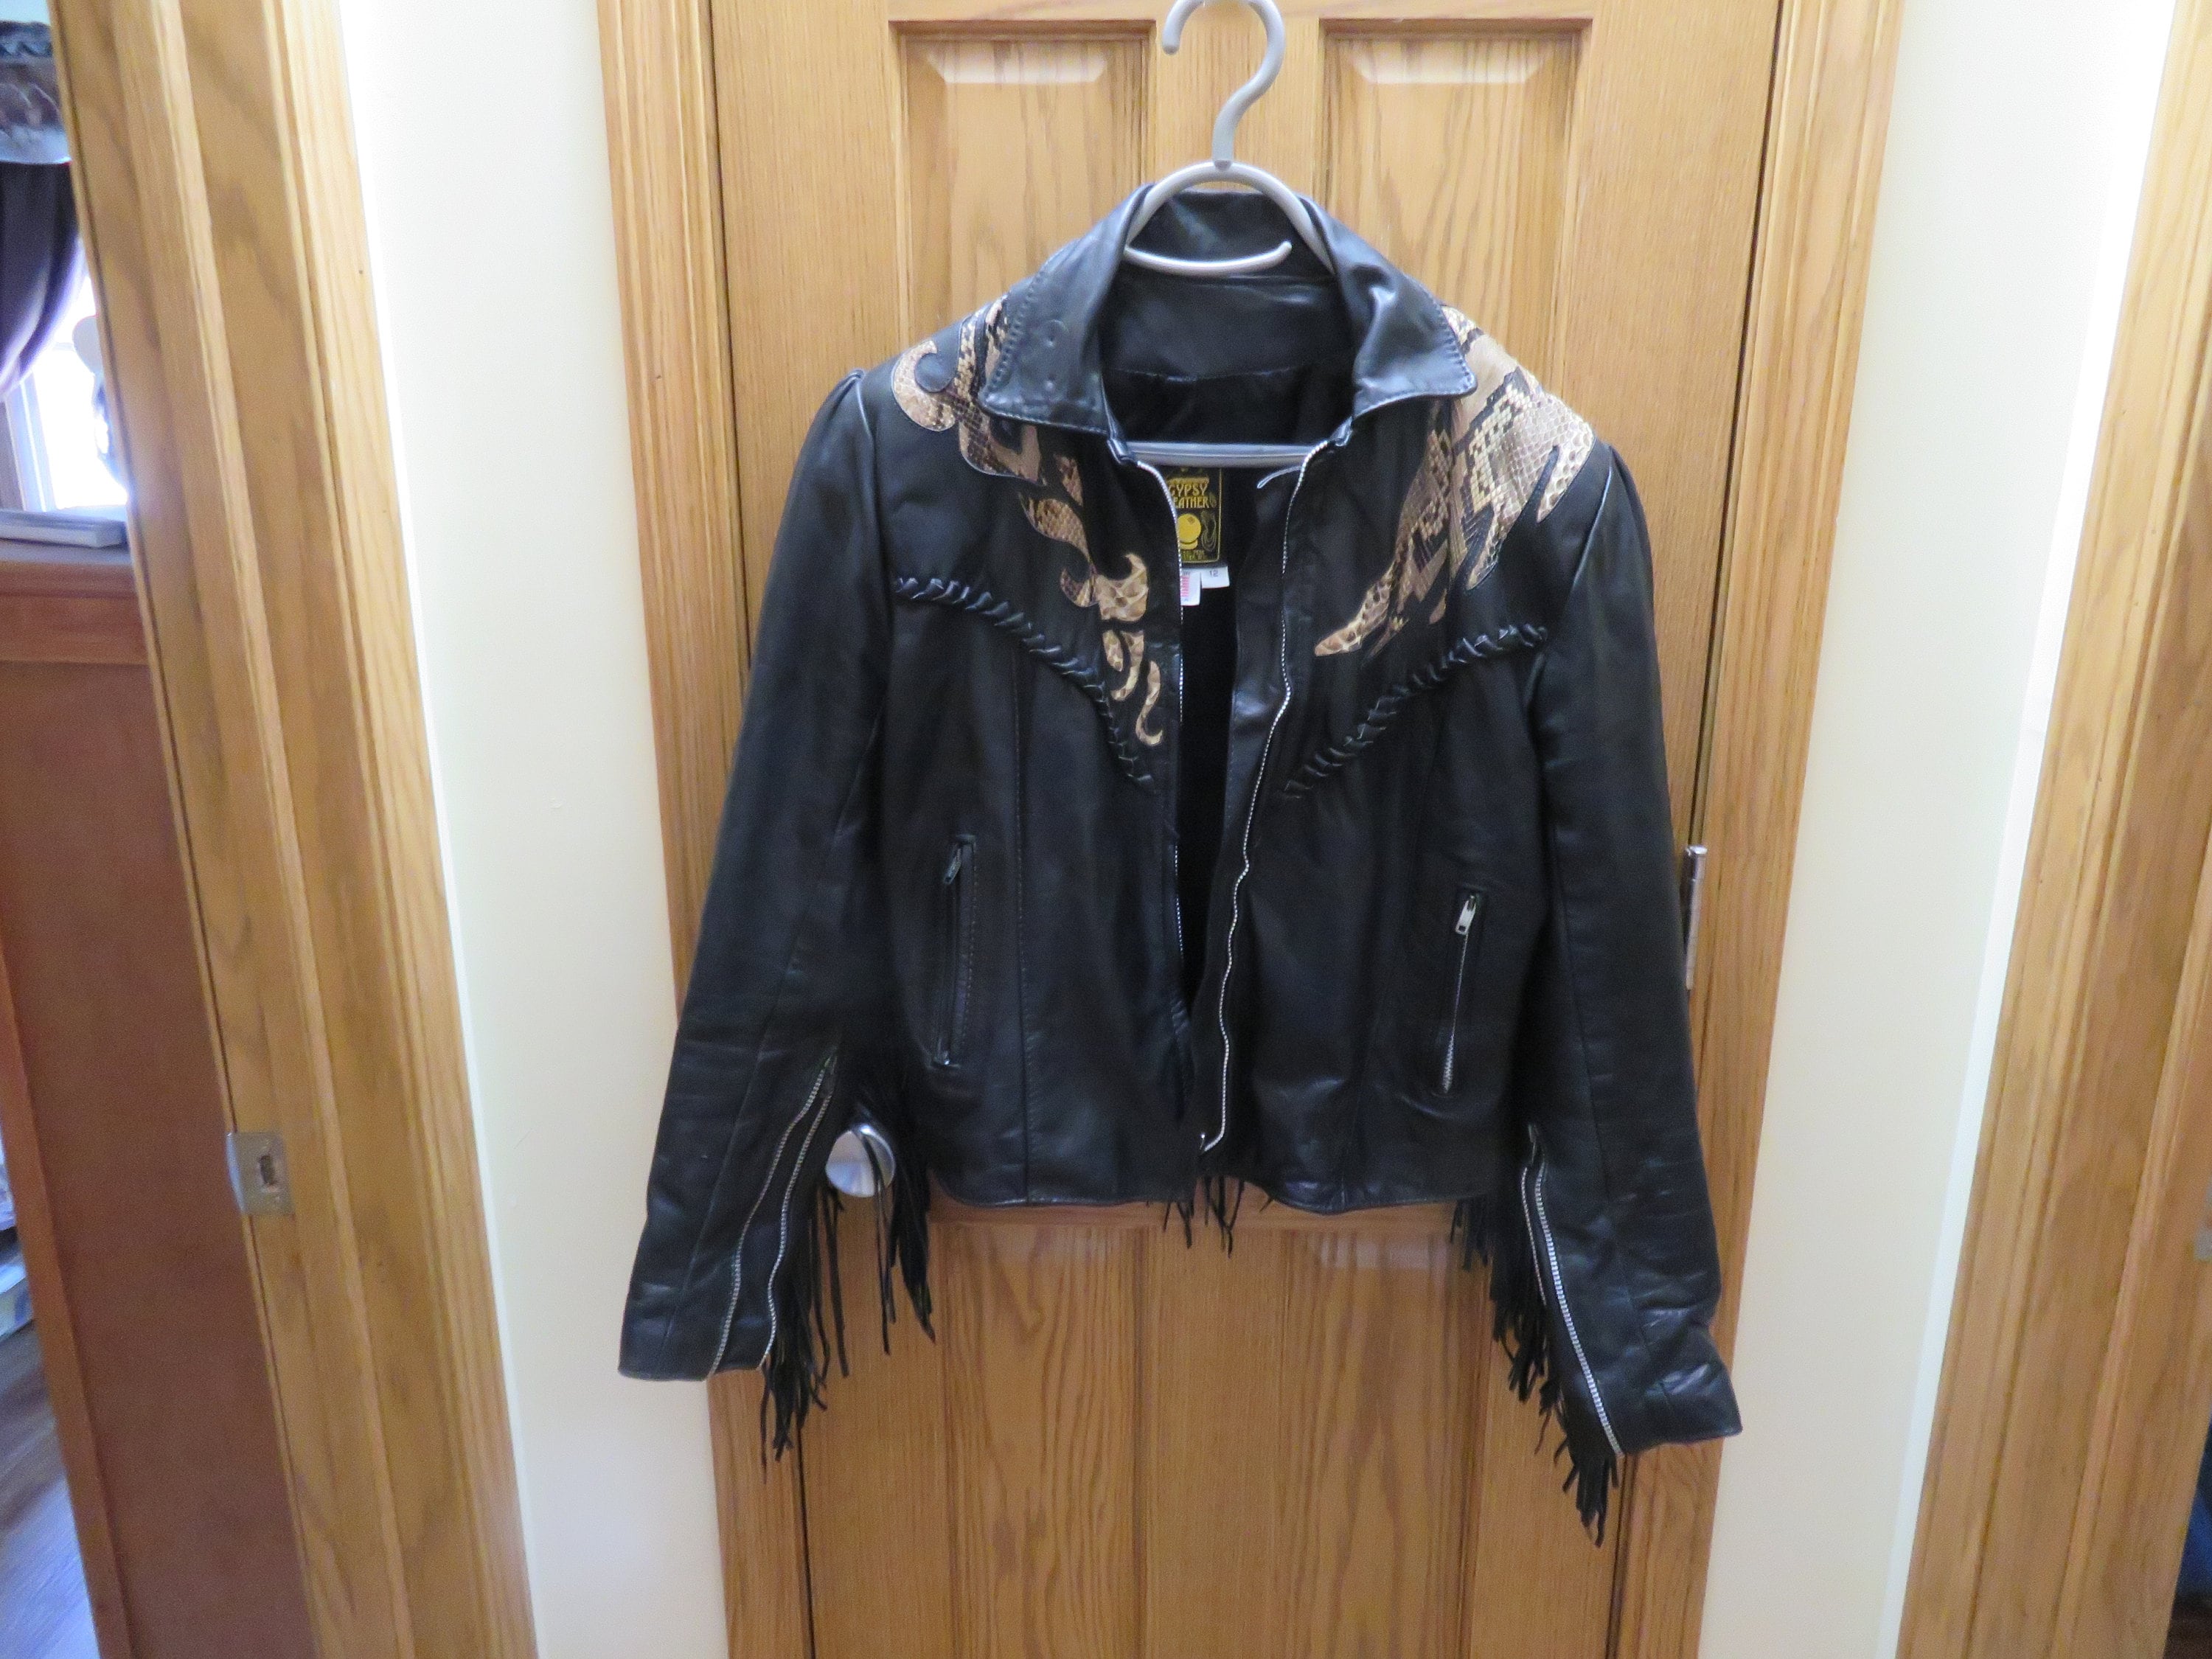 Gypsy Leather Jacket Etsy 